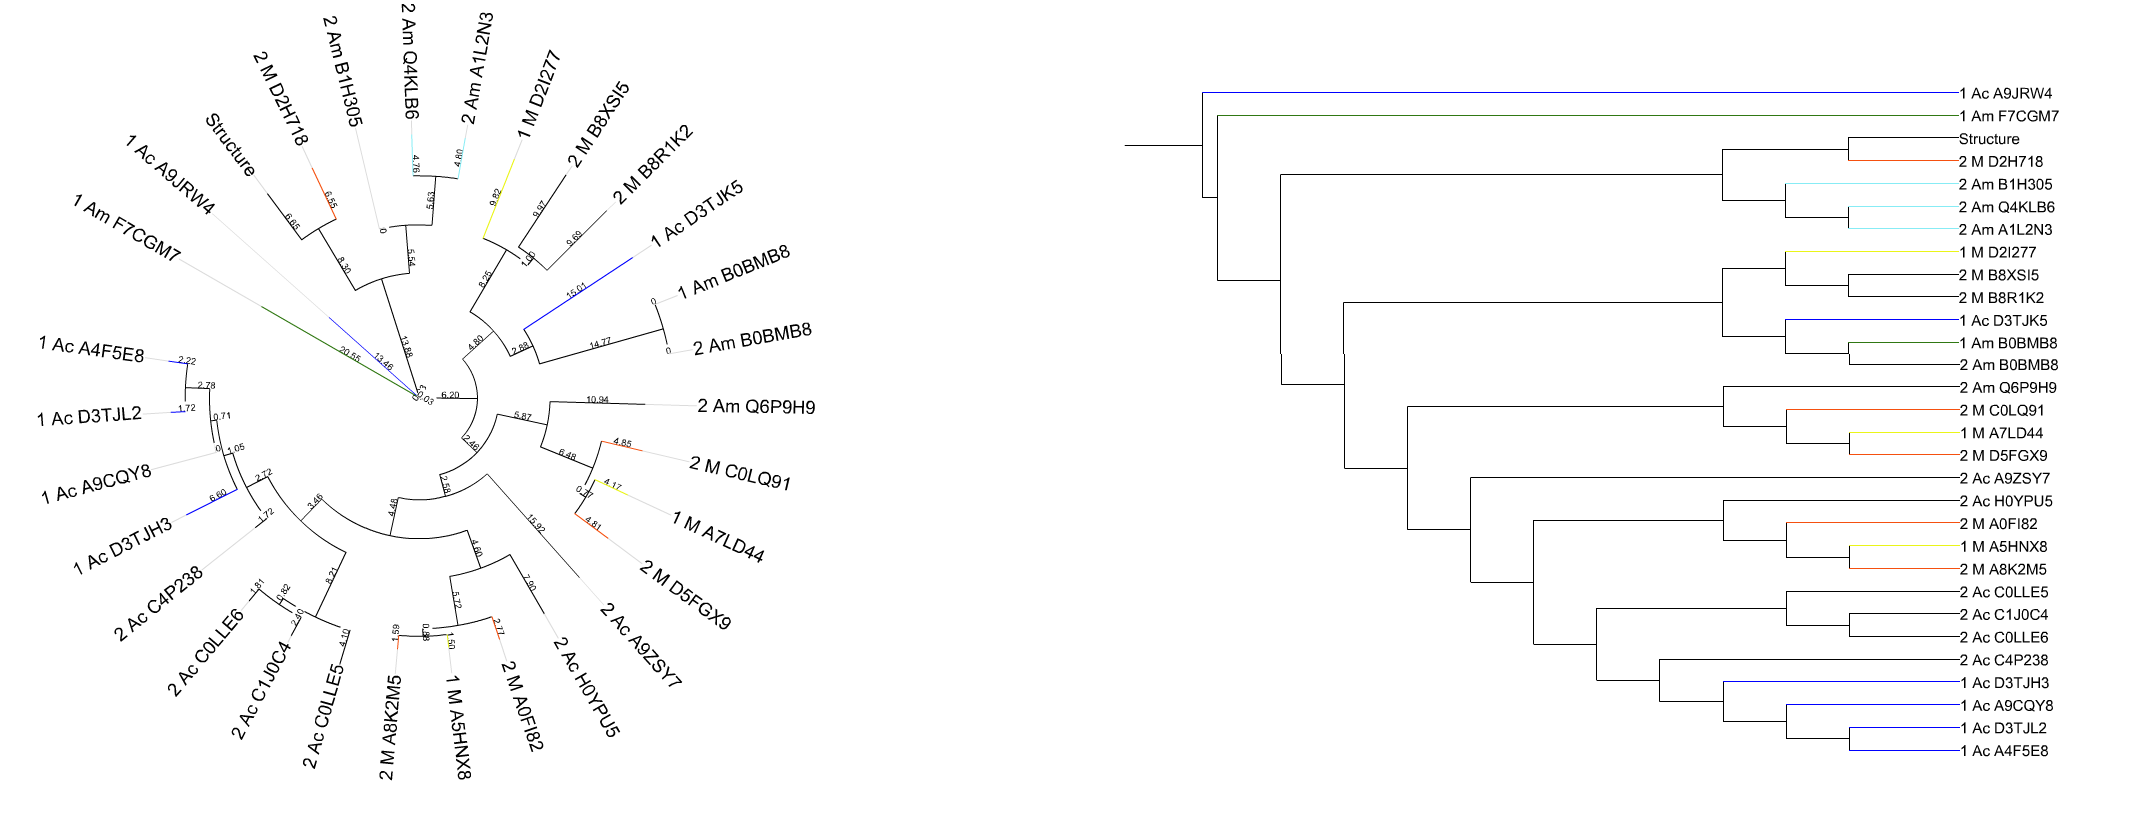 Филогенетическое дерево: виды и их характеристика, примеры - наука - 2022